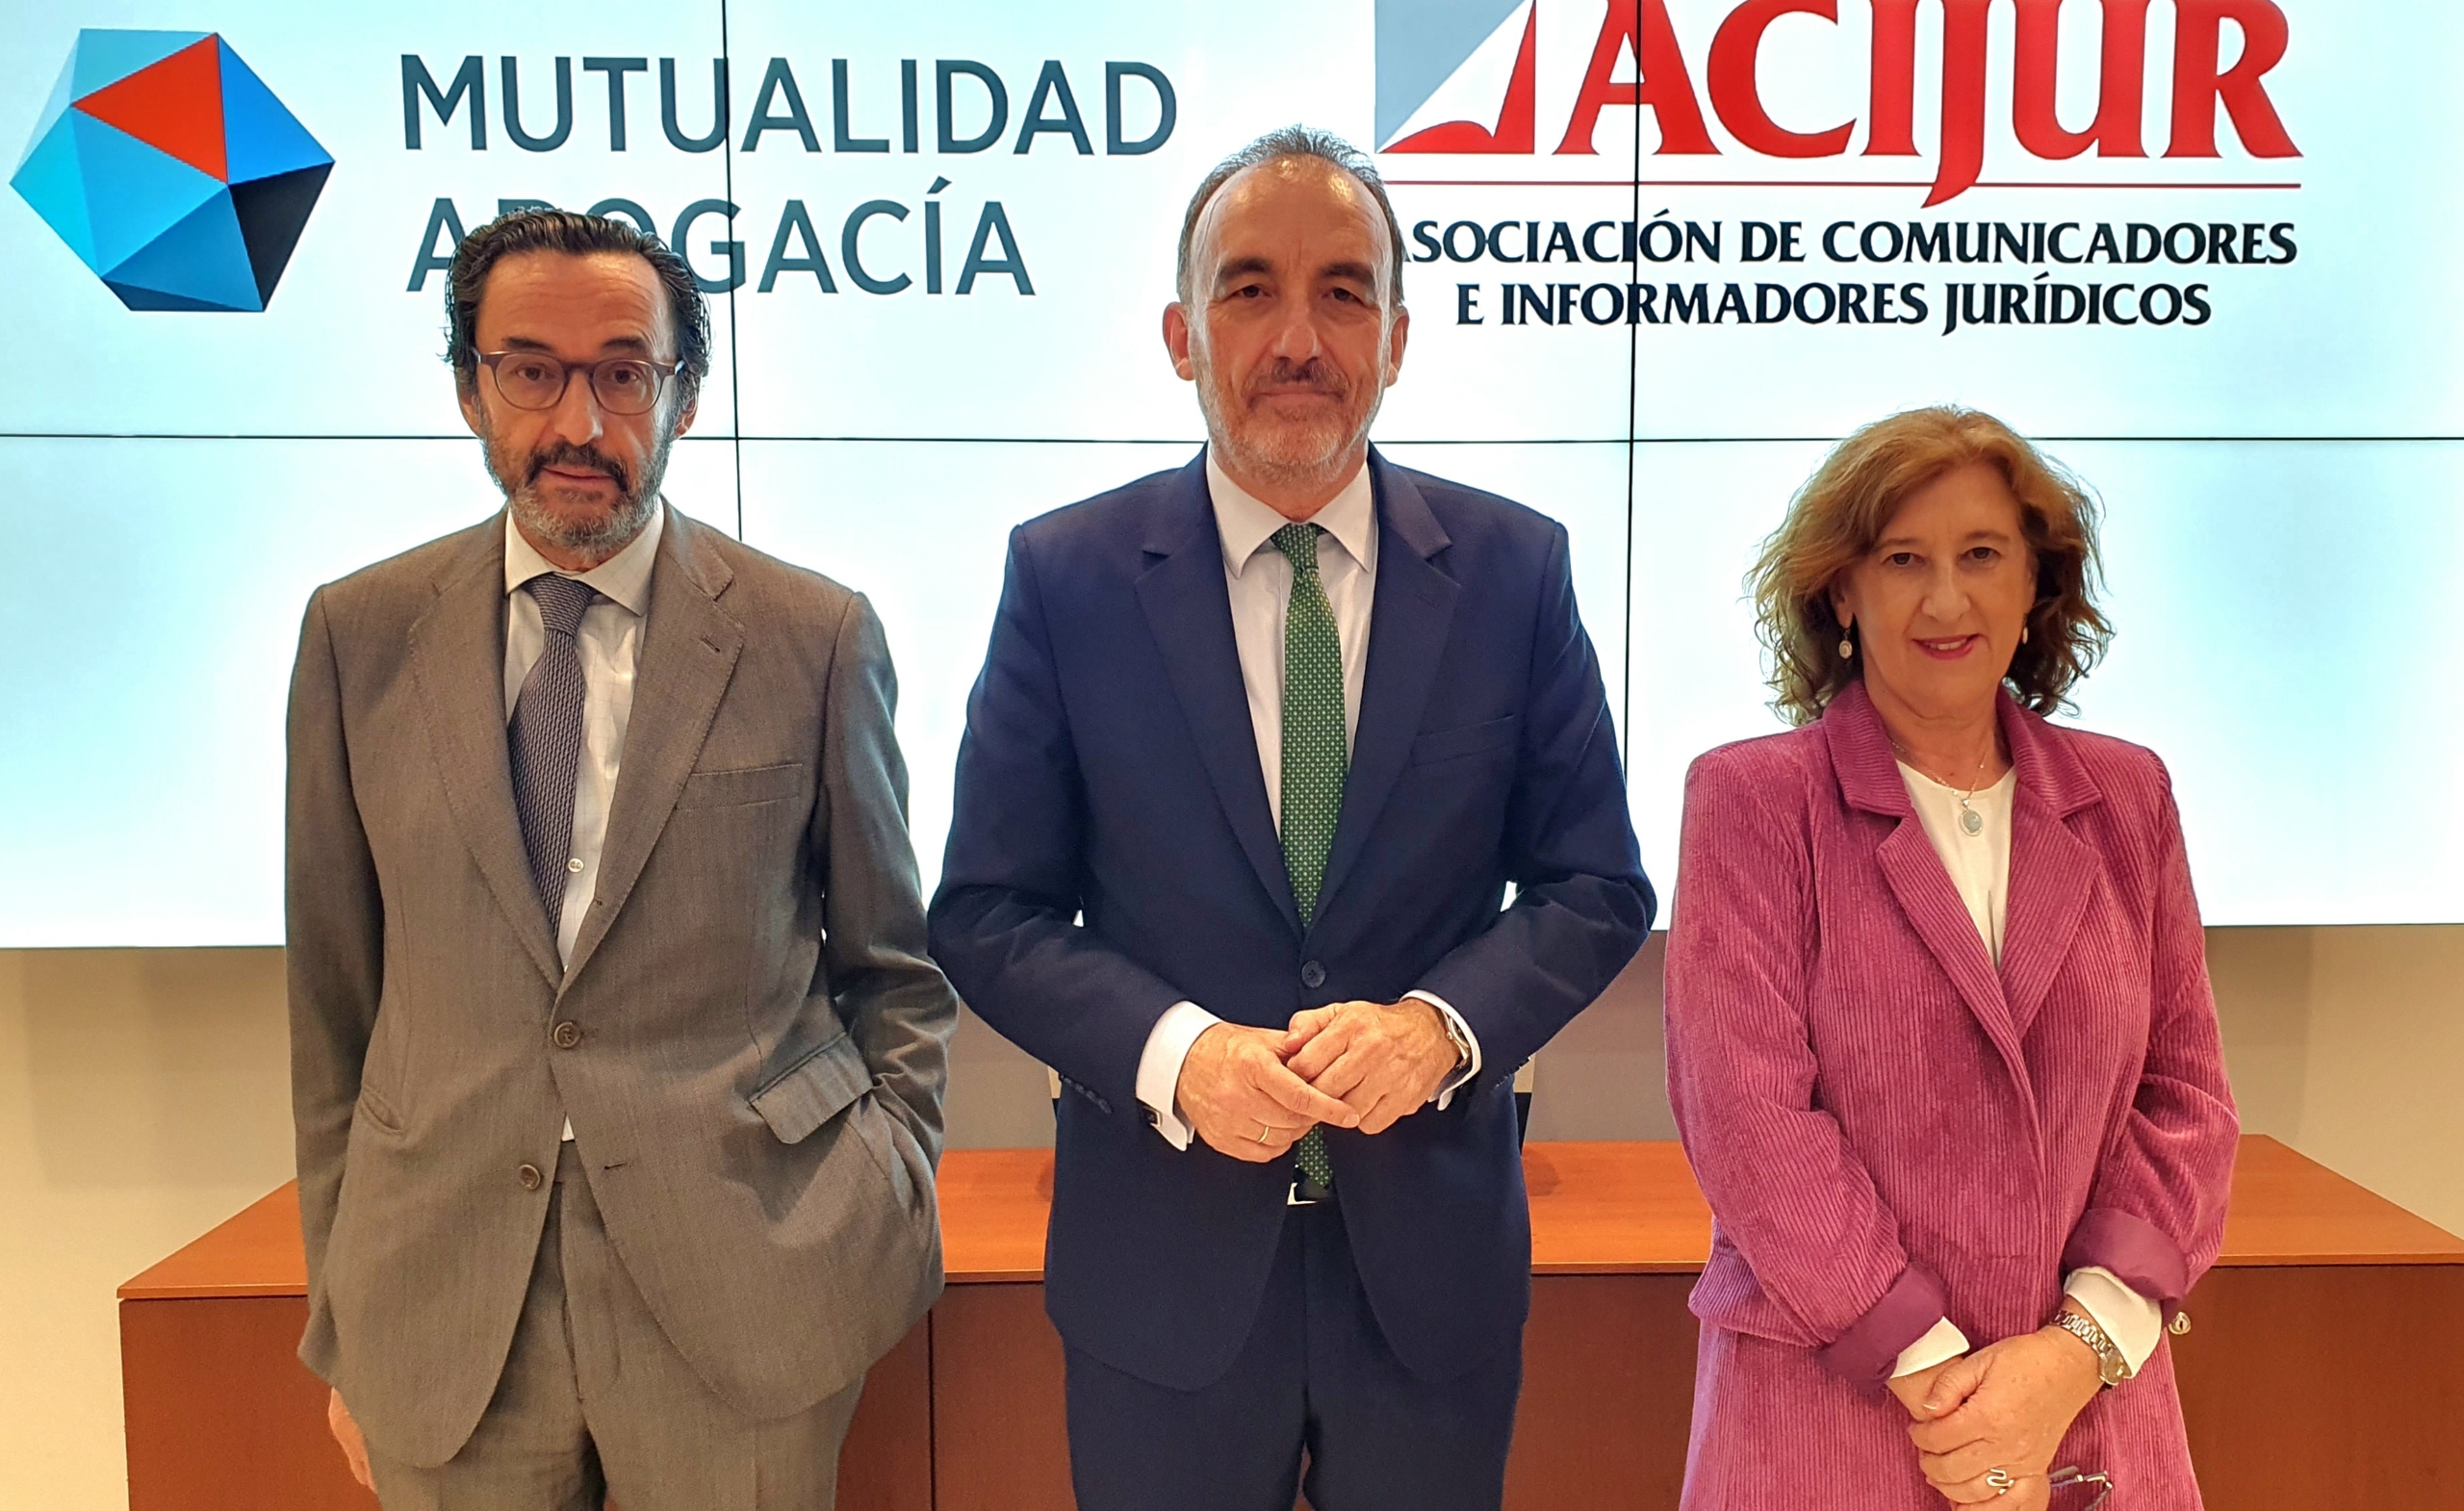 En el centro, Manuel Marchena, acompañado de Patricia Rosety, presidenta de ACIJUR, y de Enrique Sanz, presidente de la Mutualidad de la Abogacía